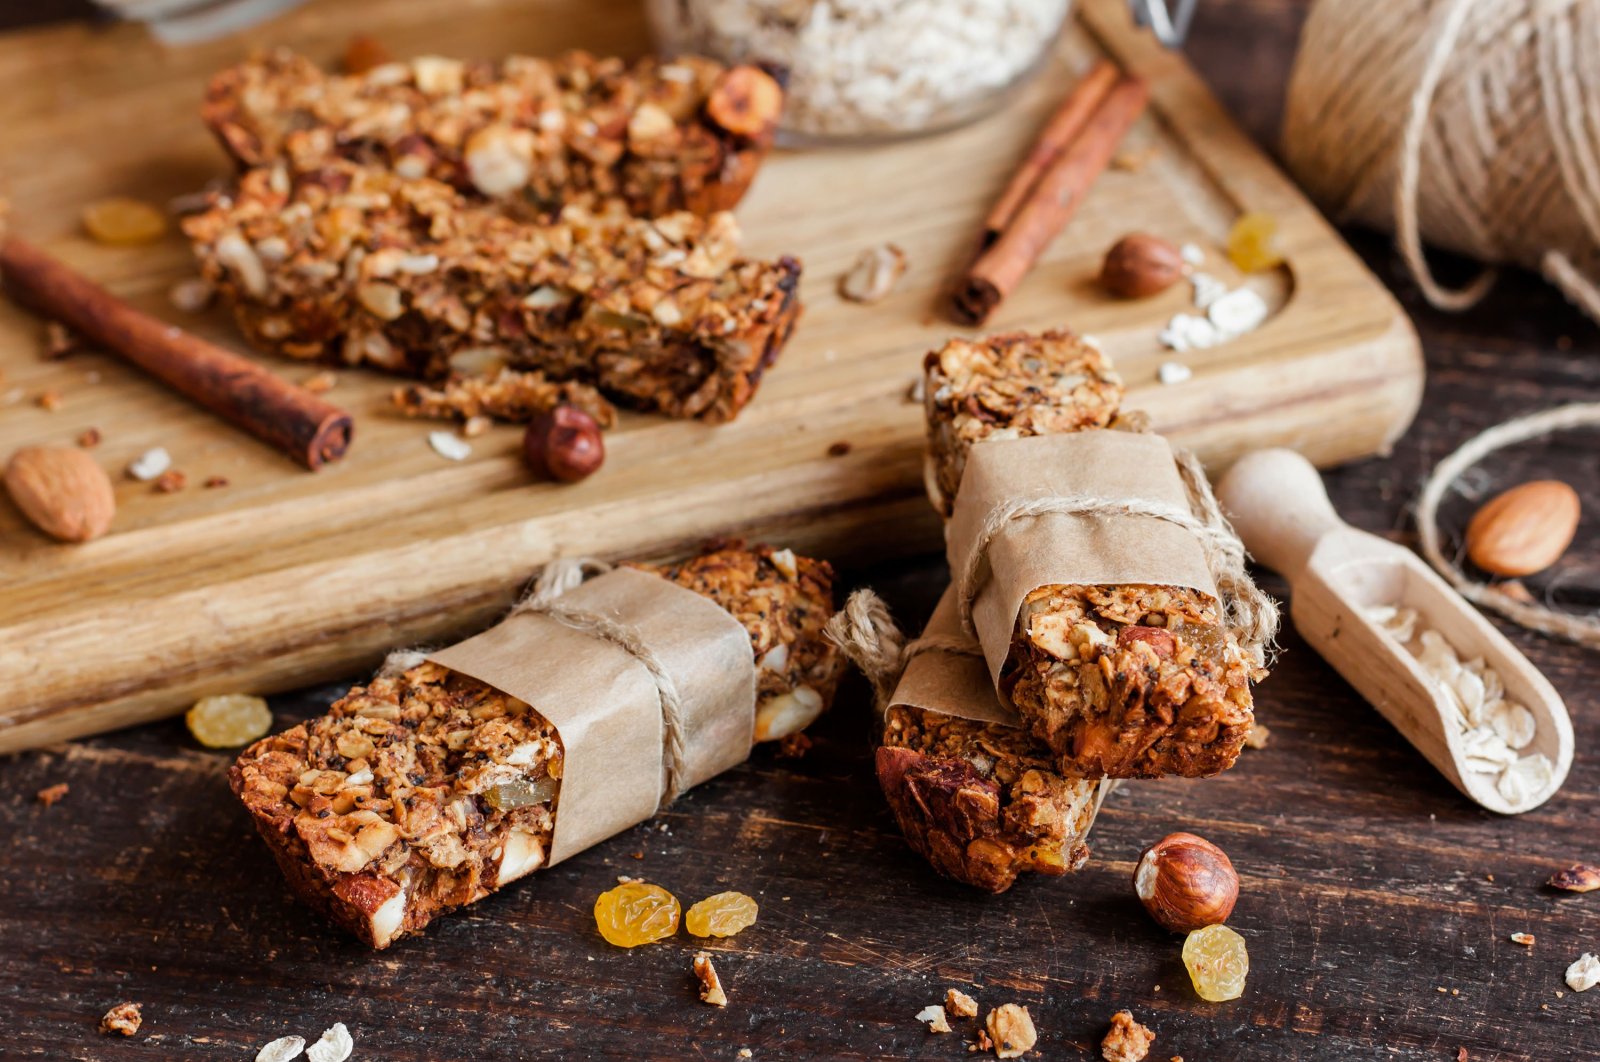 Homemade granola bars. (Shutterstock Photo)